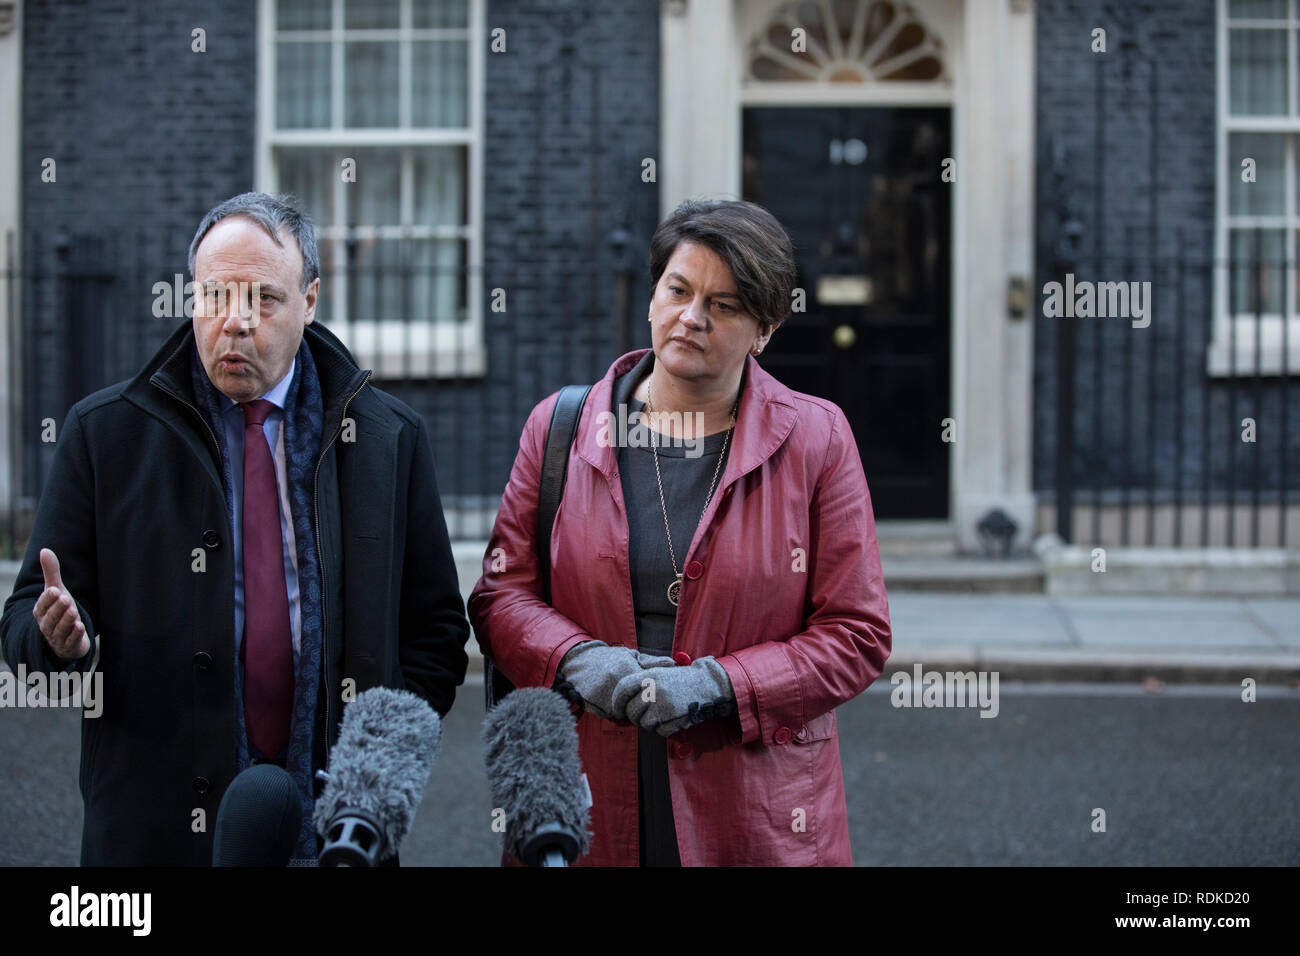 Arlene leader Förderung der Democratic Unionist Party mit Nigel Dodds stellvertretende Vorsitzende außerhalb Nr. 10 Downing Street, Whitehall, London, England, Großbritannien Stockfoto